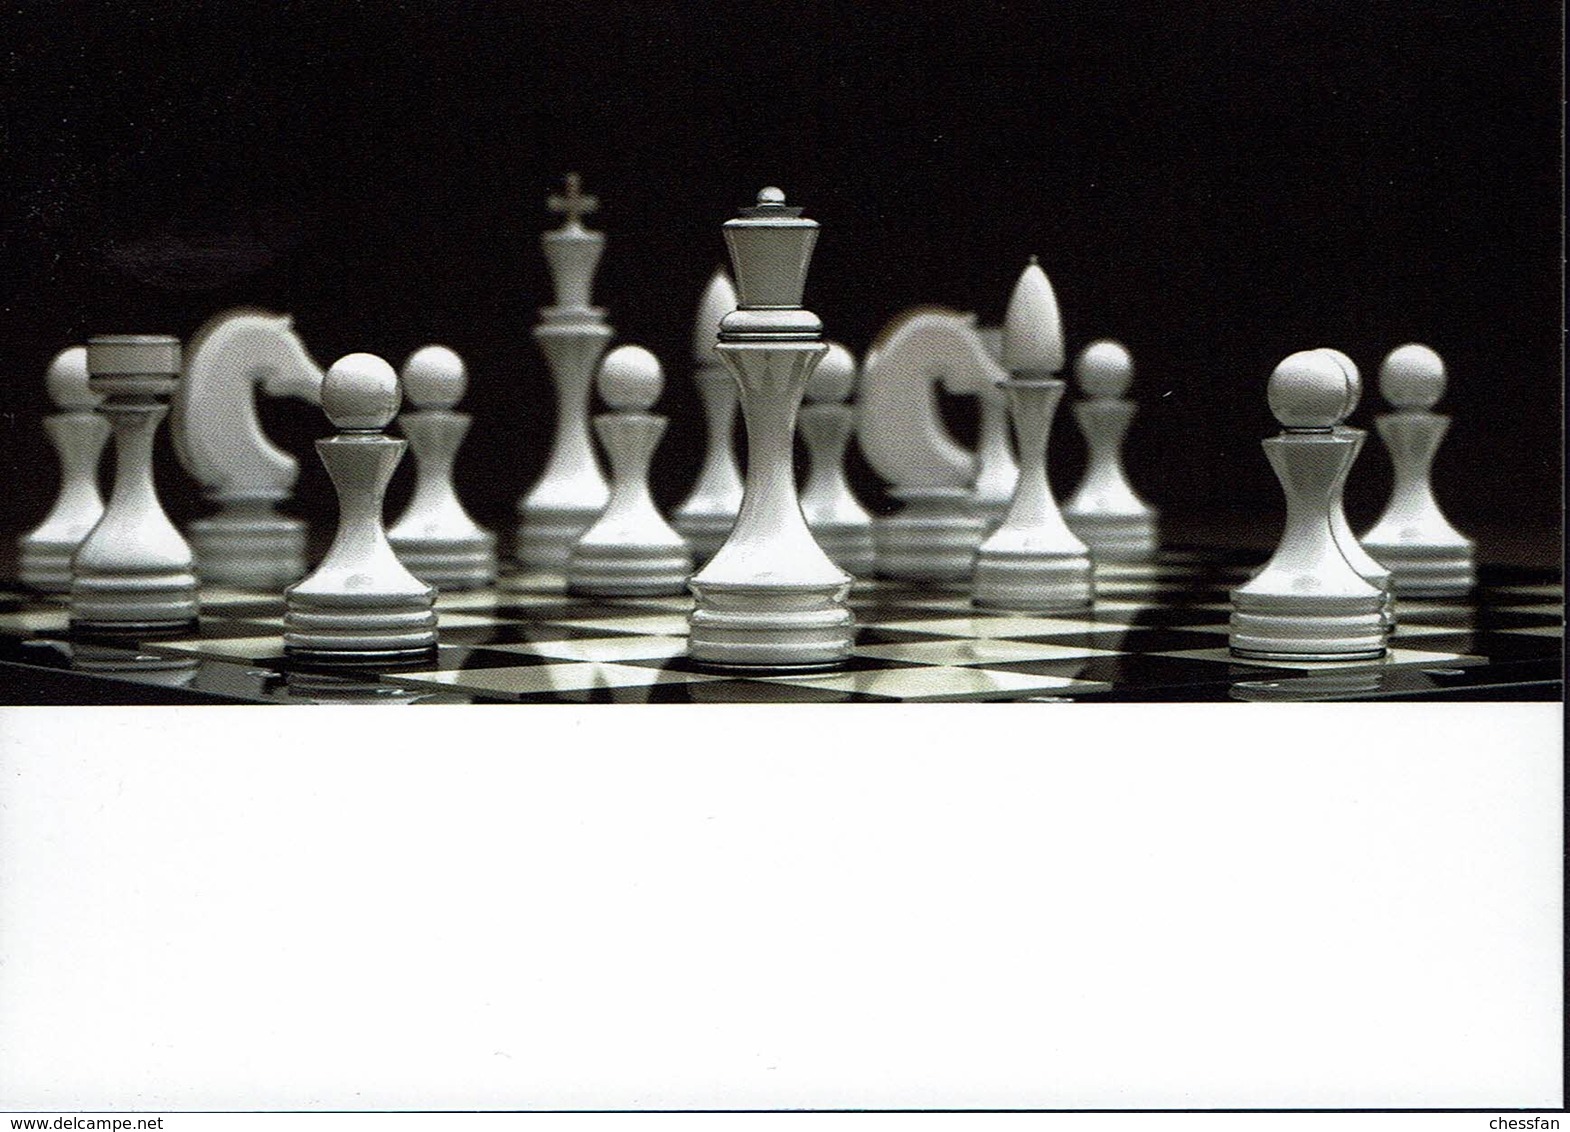 AK - Schaken Schach Chess Ajedrez - AK - Echecs